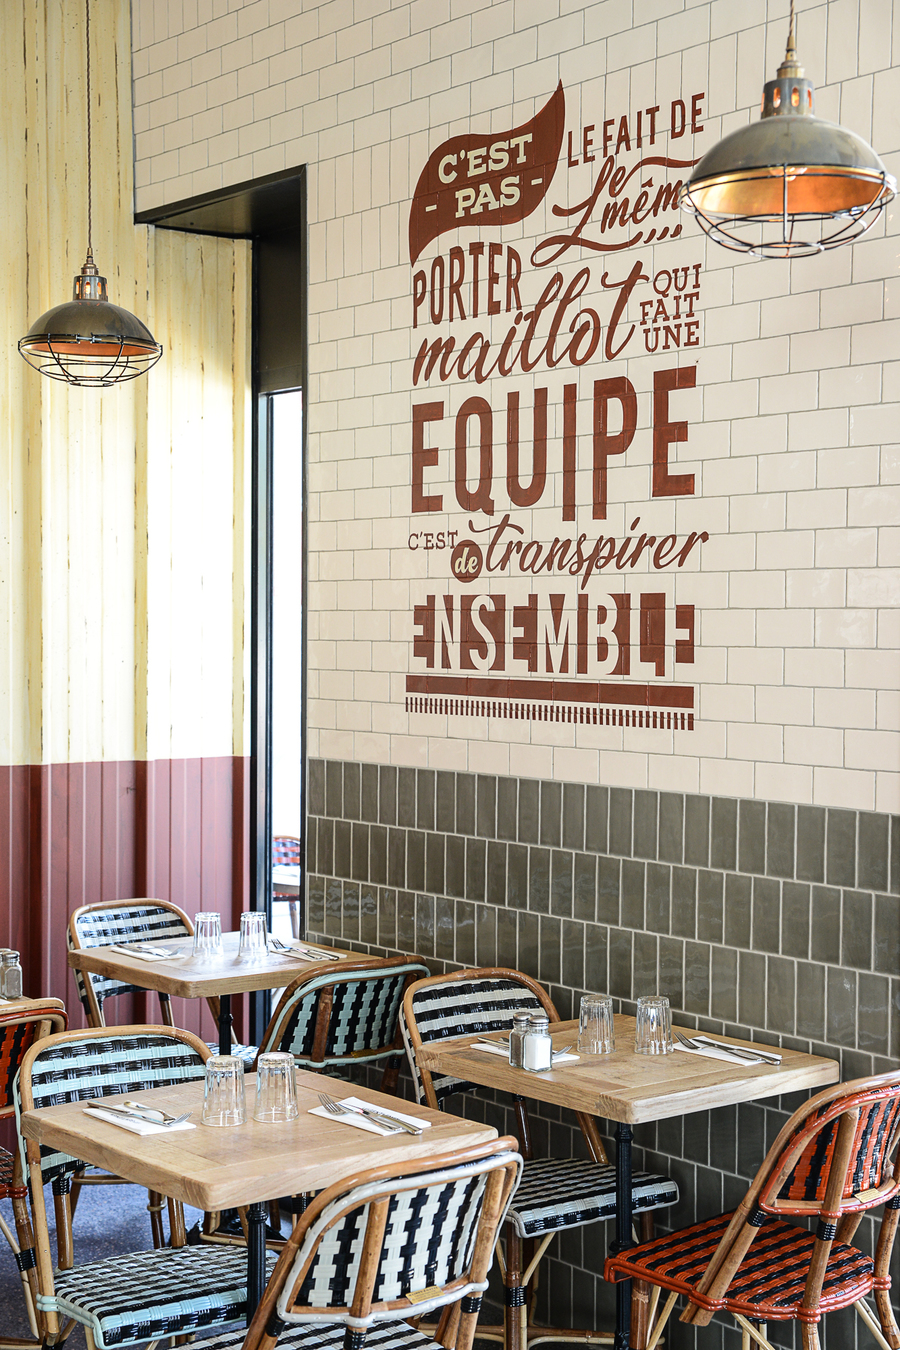 Le Studio Emma Roux a décoré le restaurant les Gentlemen de Nanterre ainsi qu'a l'identité visuelle de ce bistrot